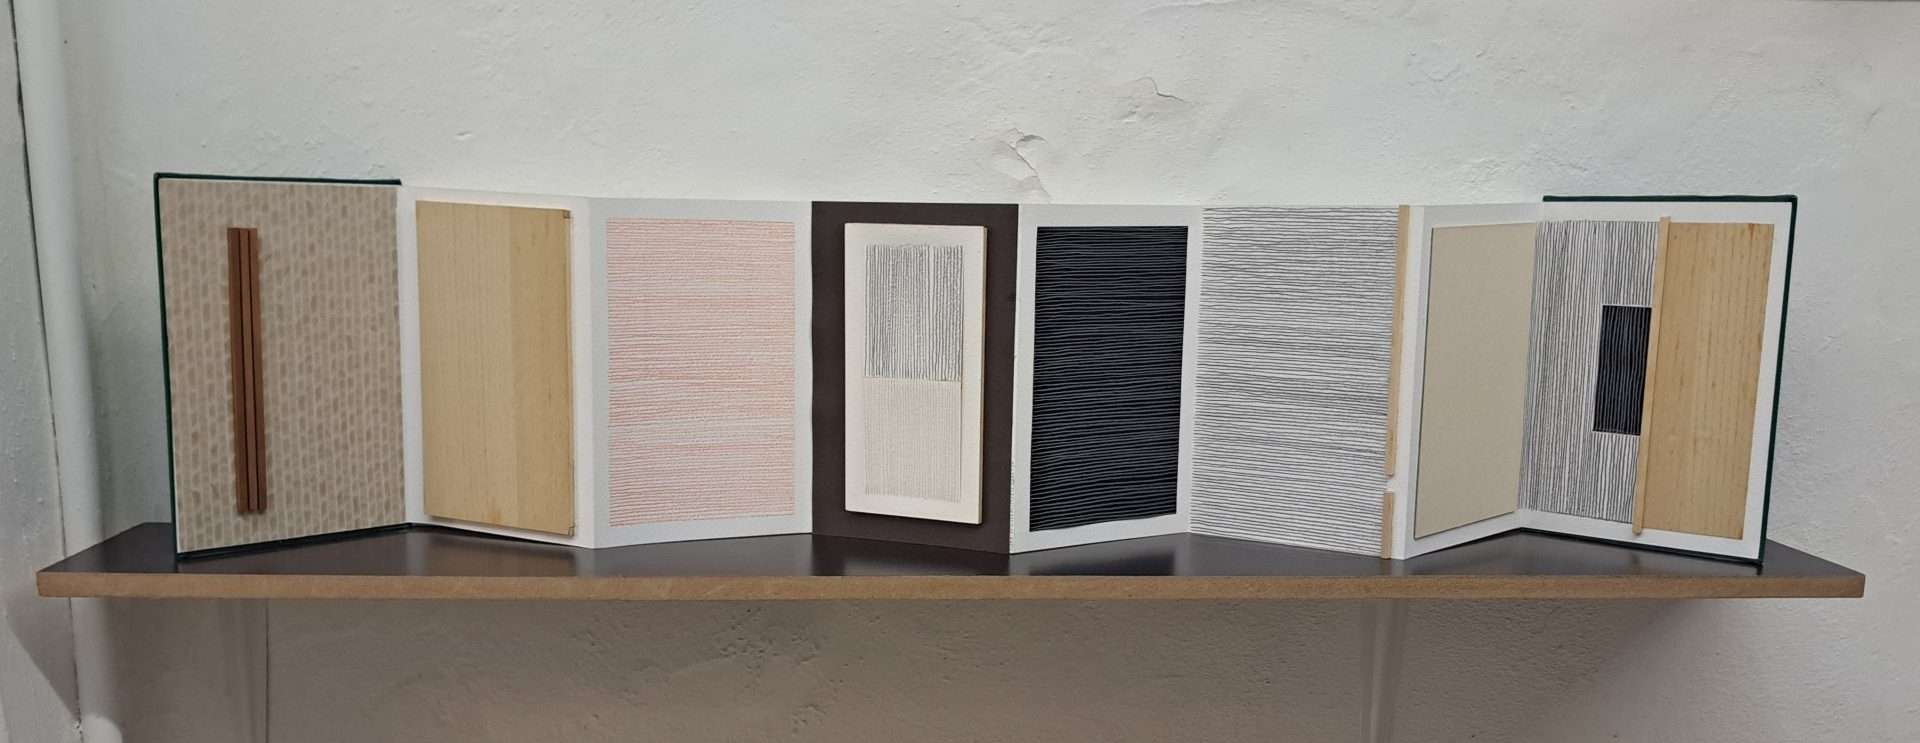 Serie Green Books, 2021. Libreta intervenida con madera, collage y crayón, 24 x 85 x 16 cm. (Expo “Seguimos…concretando”, Factoría Diseño, La Habana).